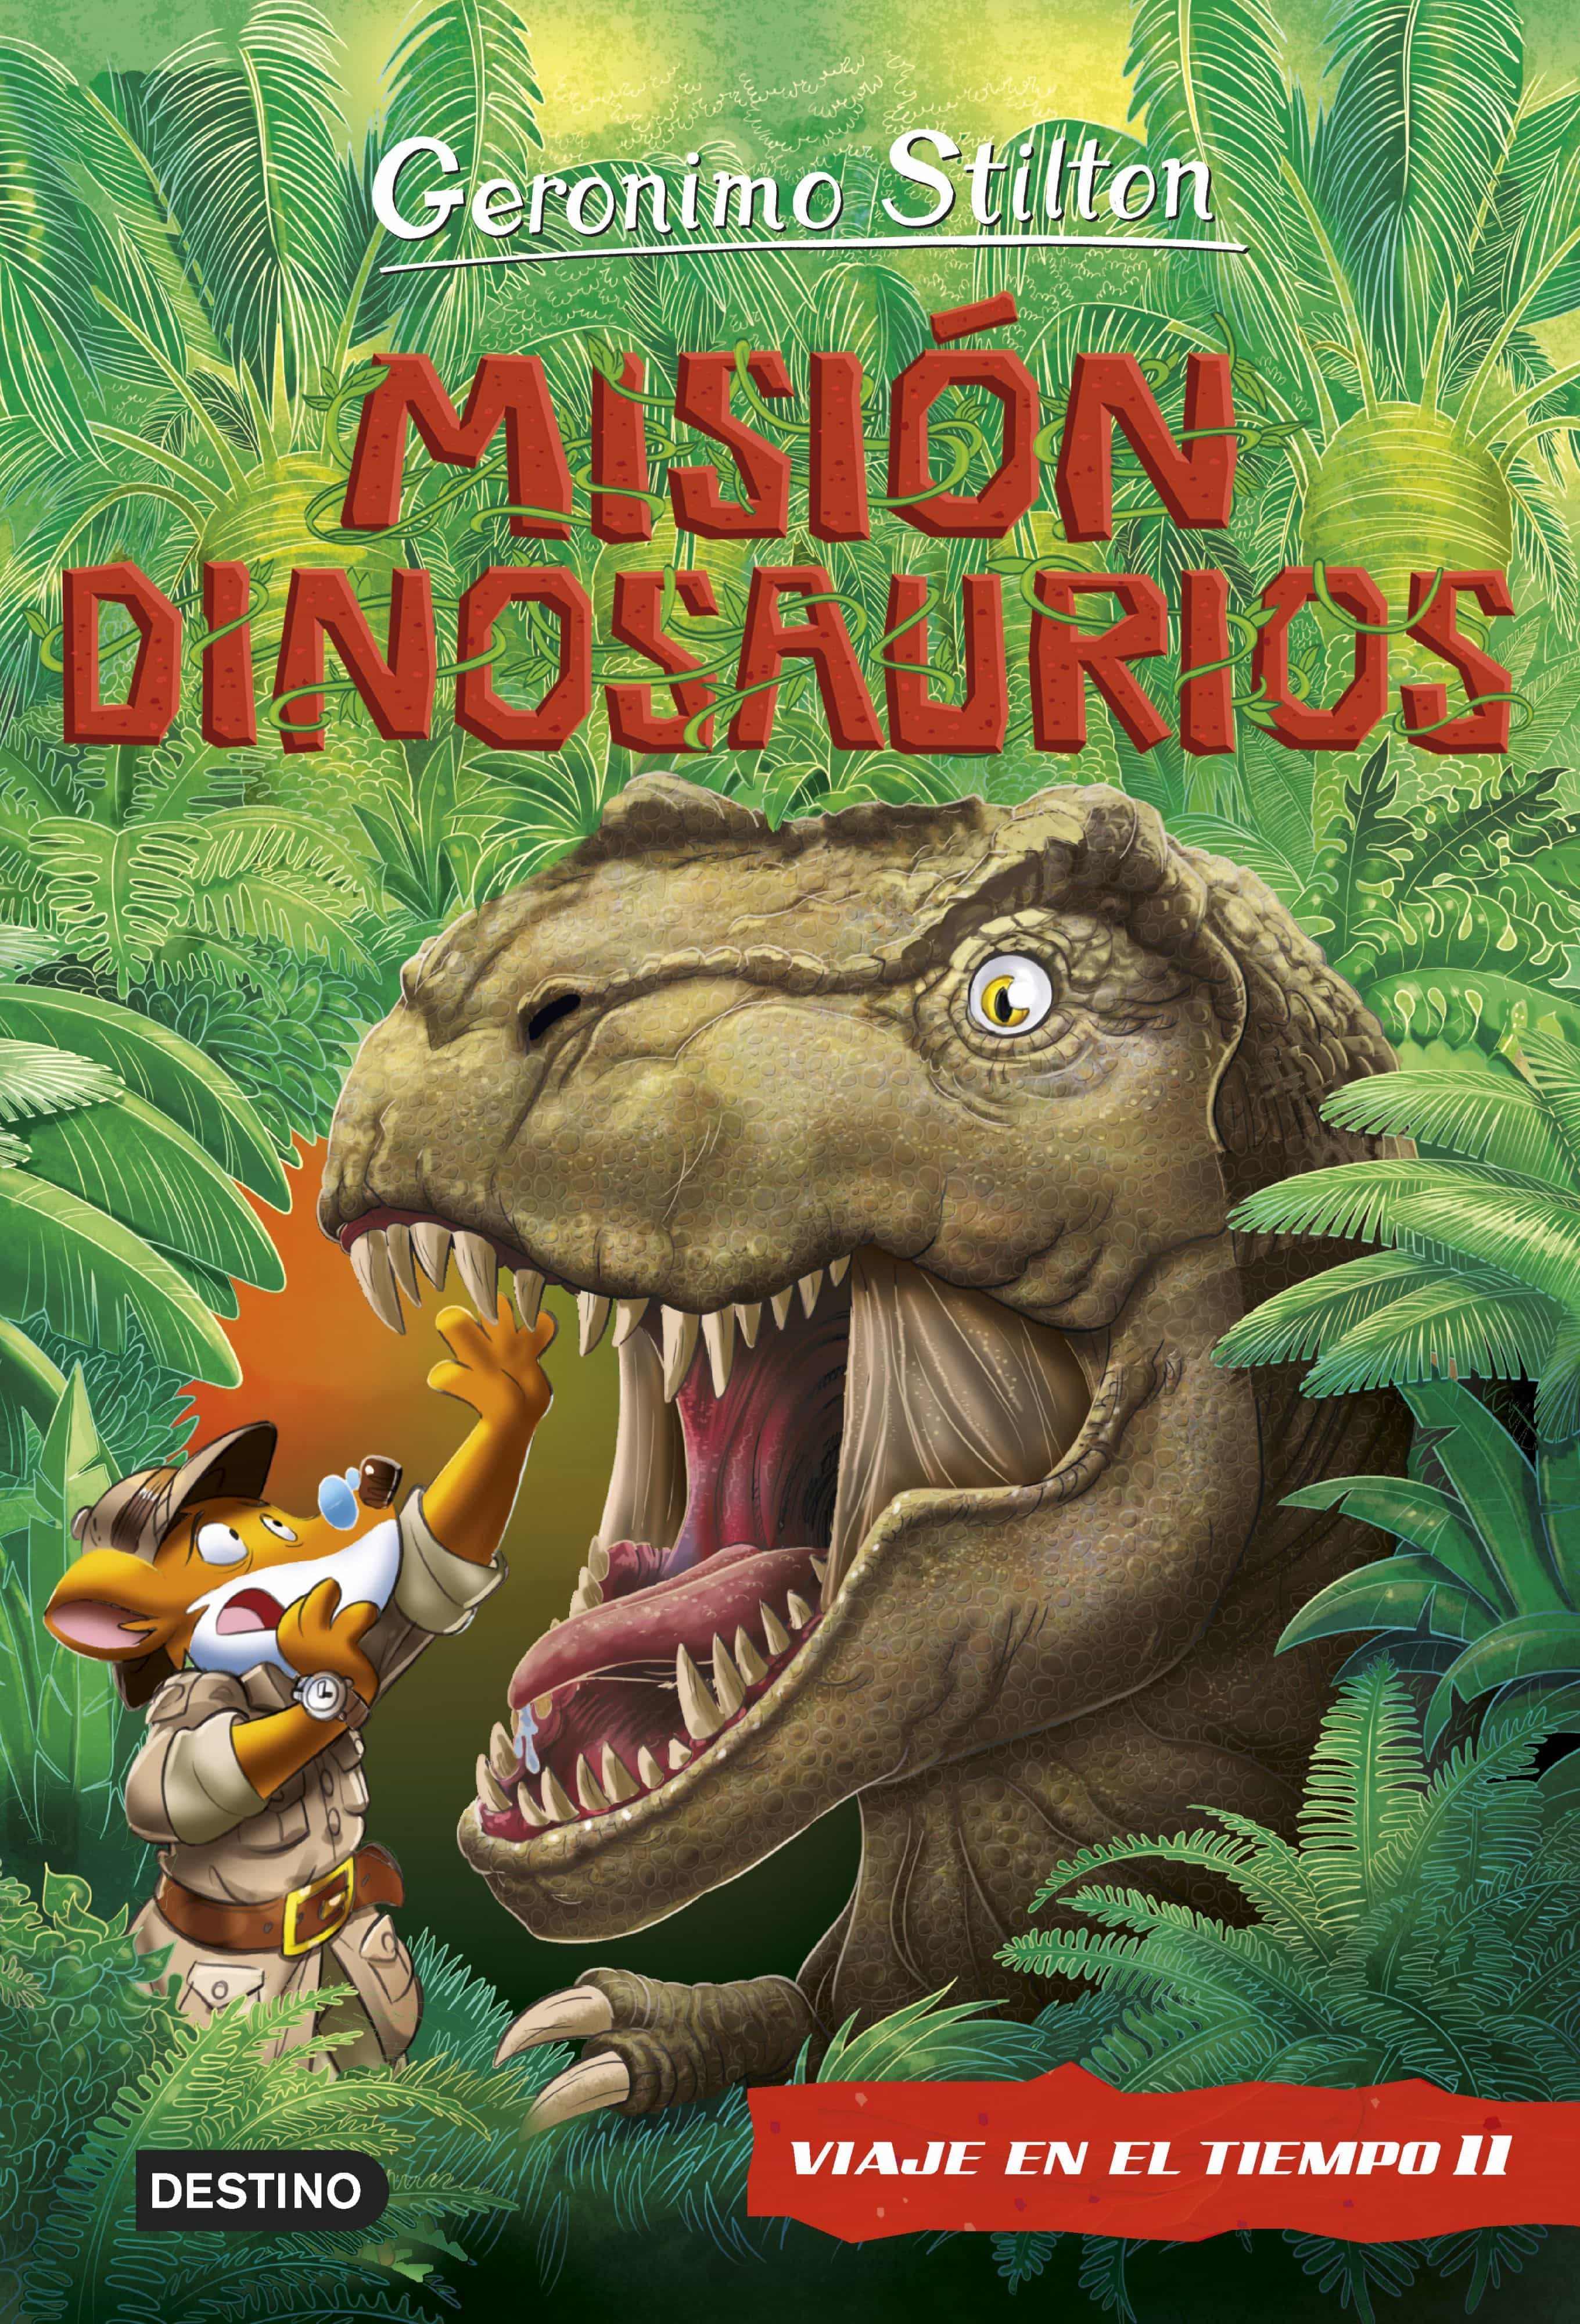 Viaje en el tiempo 11 Misión dinosaurios. Gerónimo Stilton